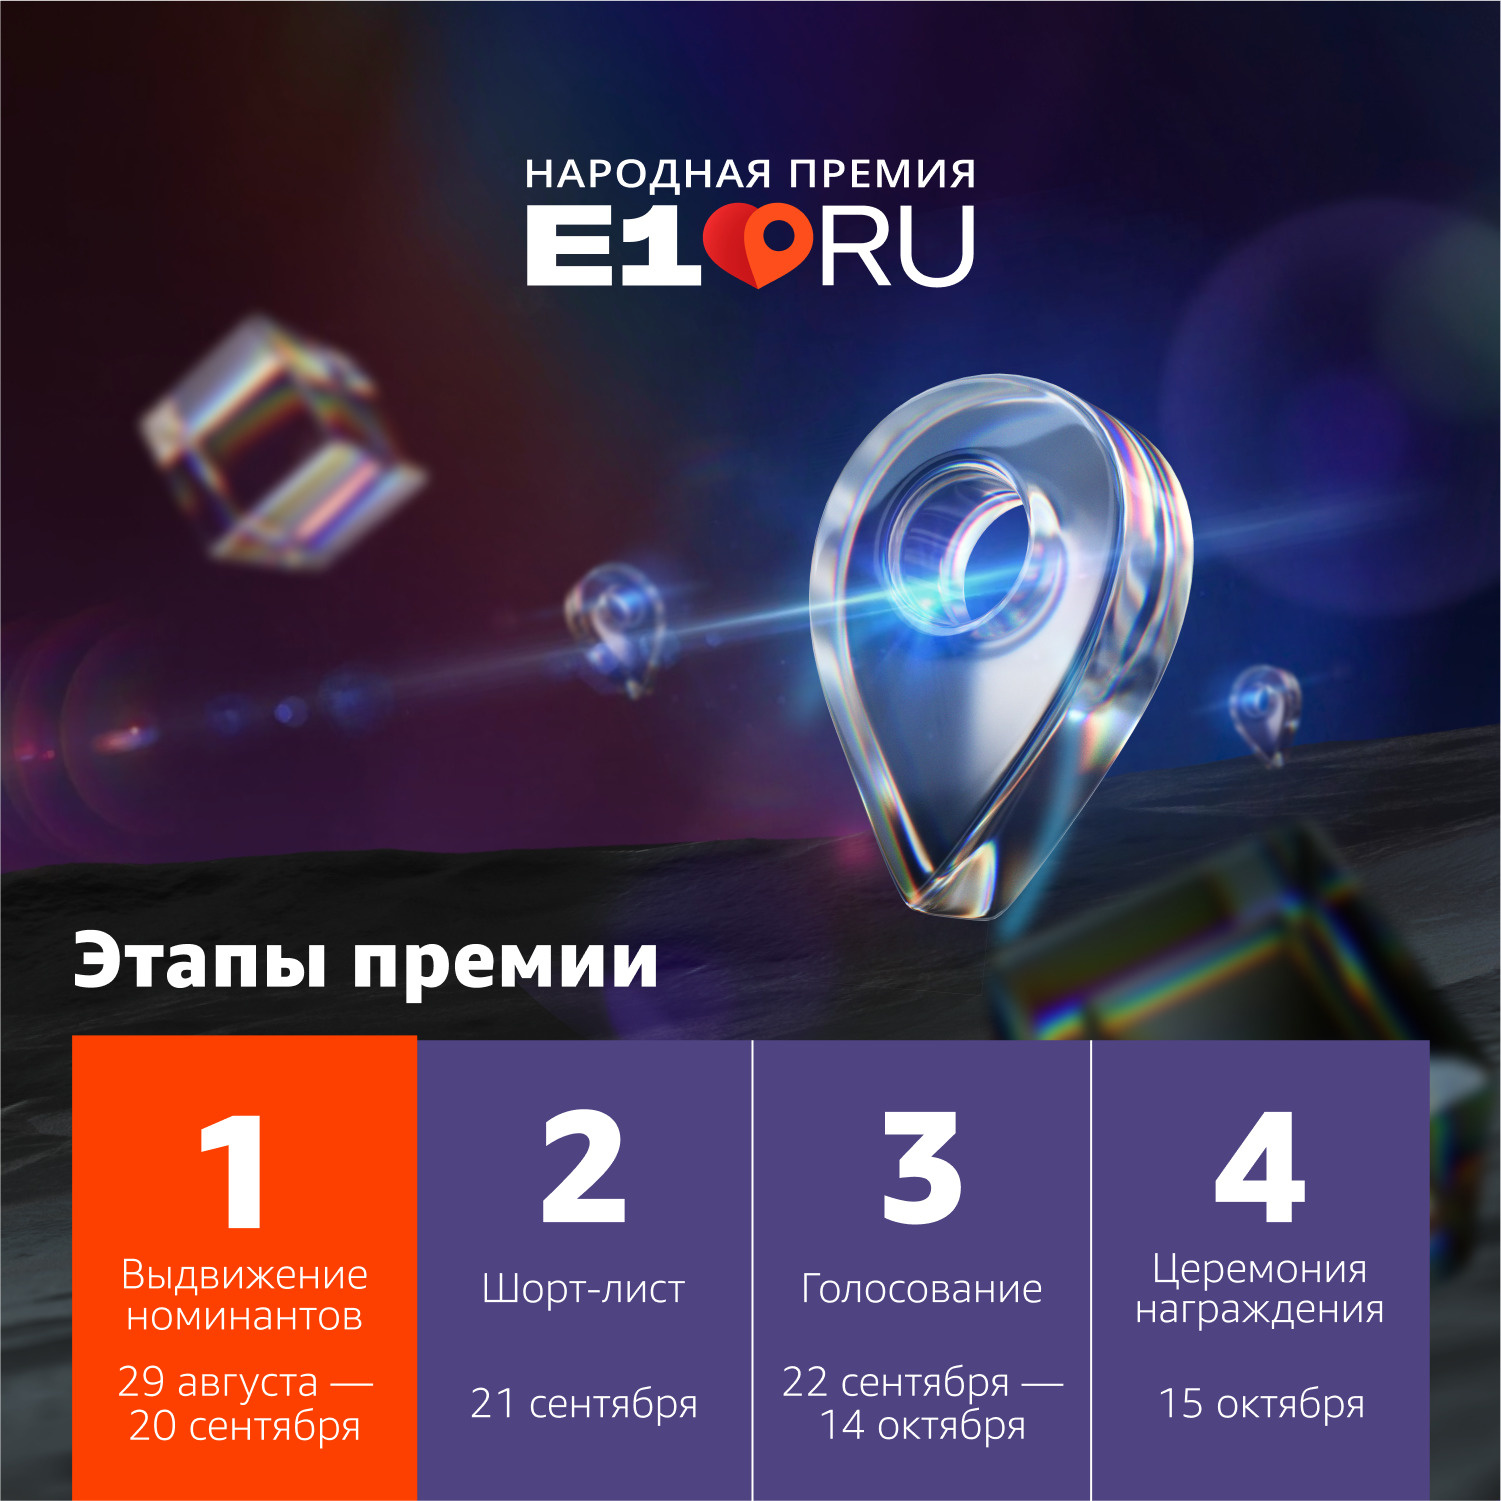 Церемония награждения пройдет в Екатеринбурге 15 октября